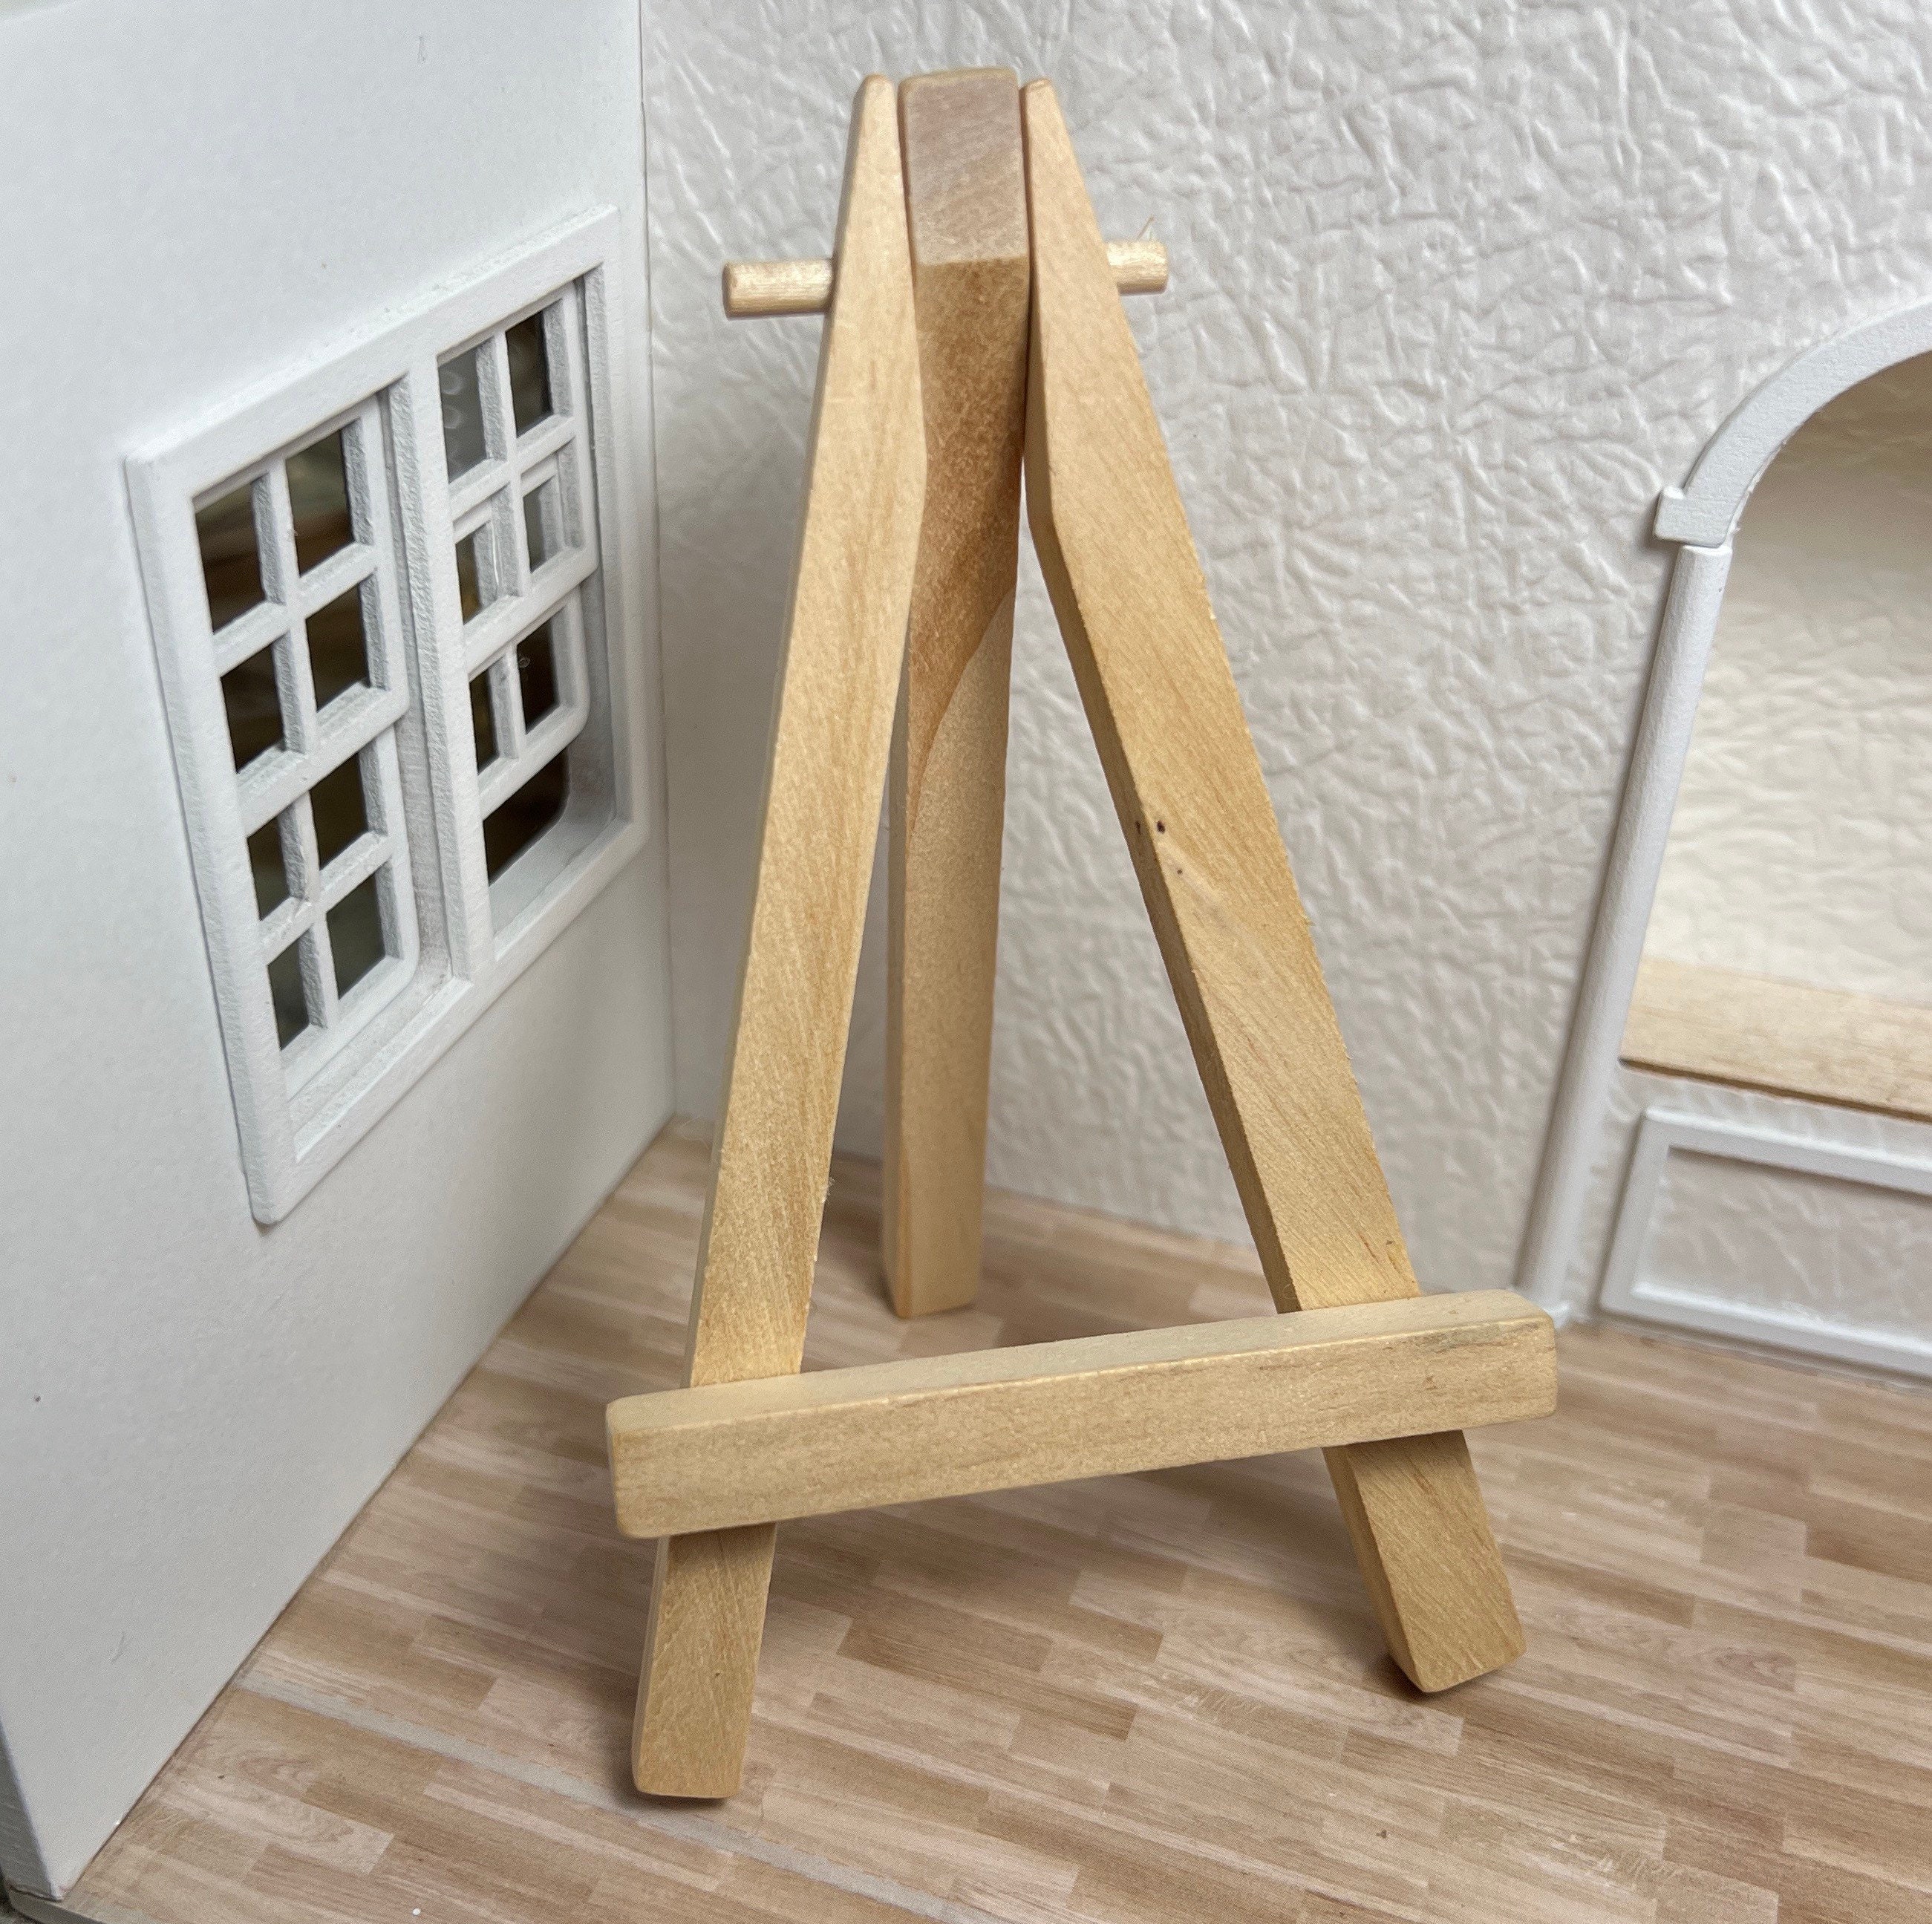 Mini Easel Stand. Mini Wooden Artist Easel. Mini Wood Display